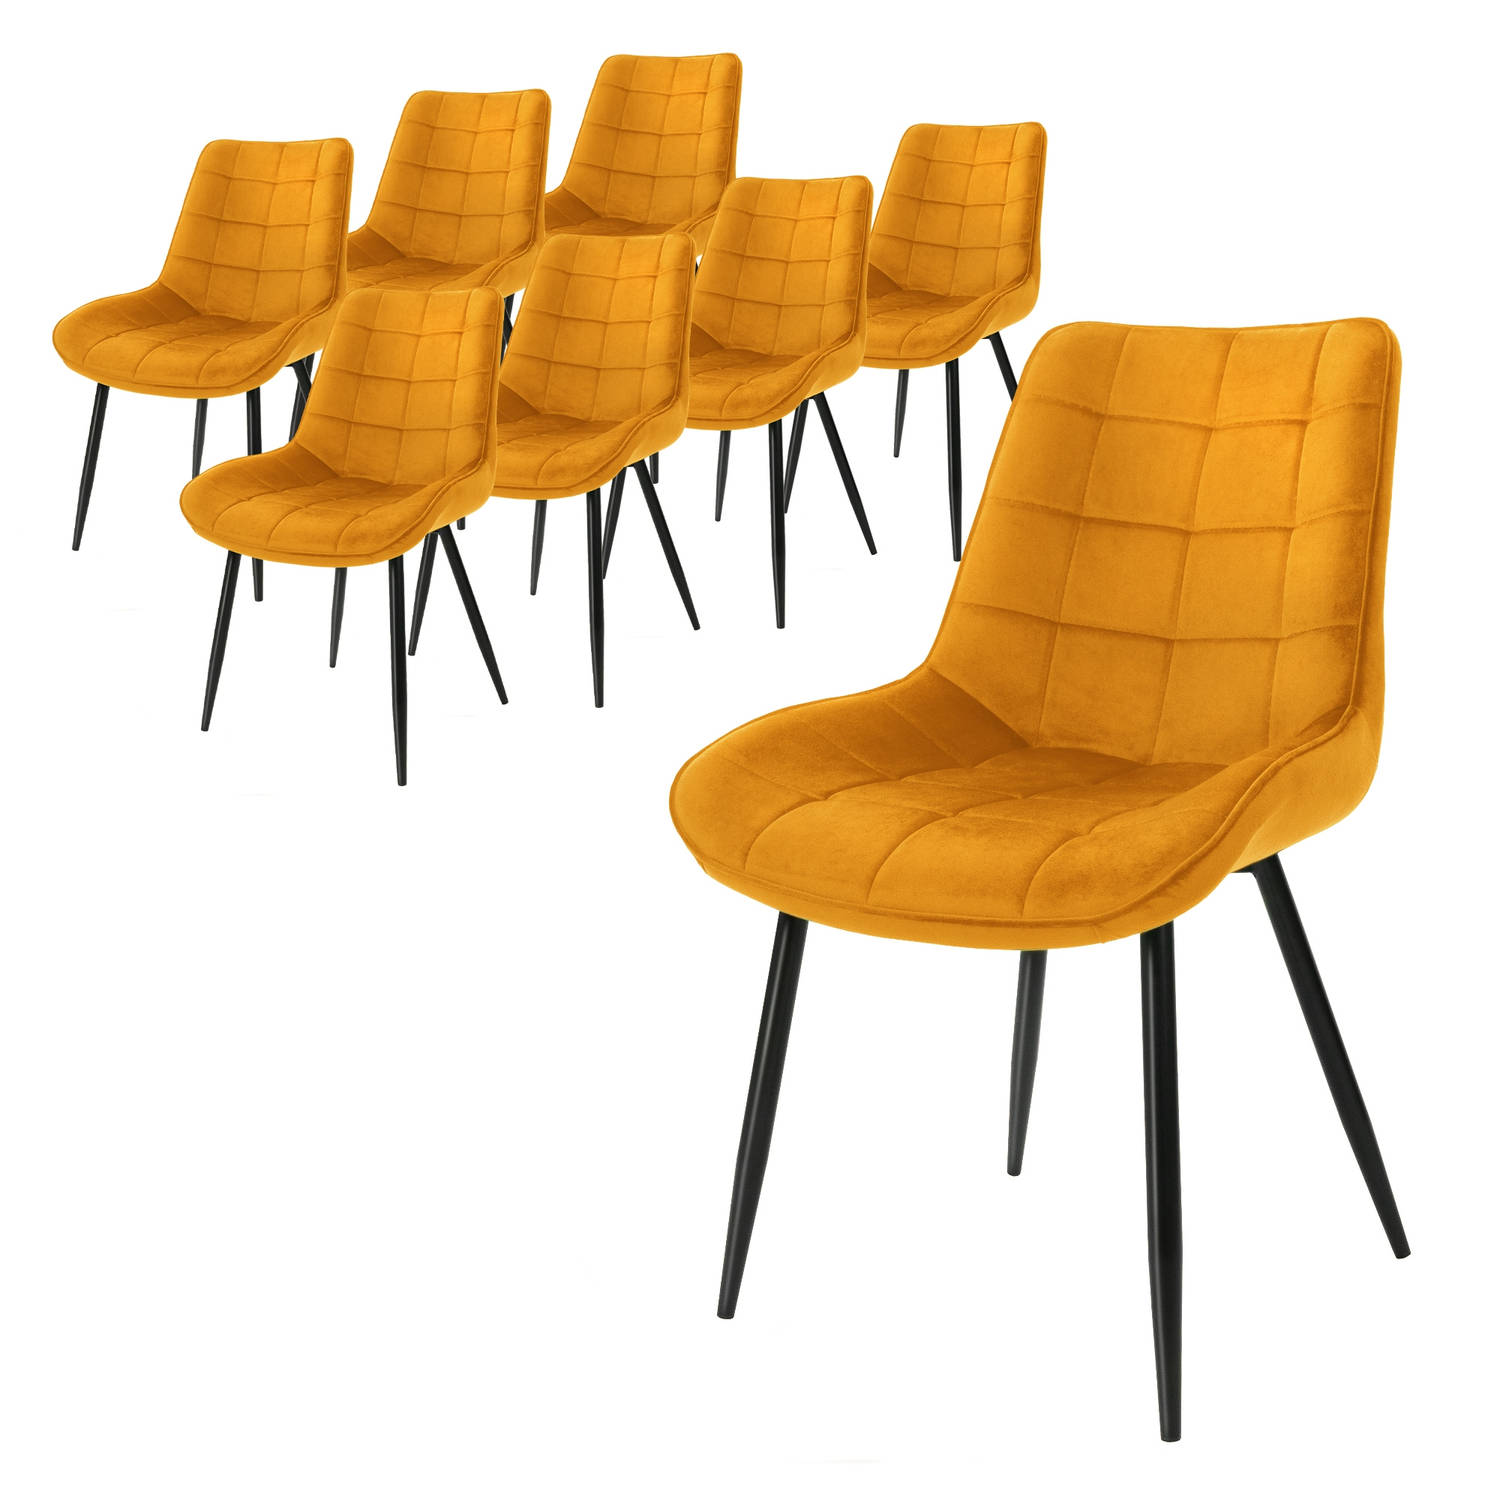 ML-Design Set van 8 eetkamerstoelen met rugleuning, oker, keukenstoel met fluwelen bekleding, gestoffeerde stoel met metalen poten, ergonomische stoel voor eettafel, woonkamerstoel